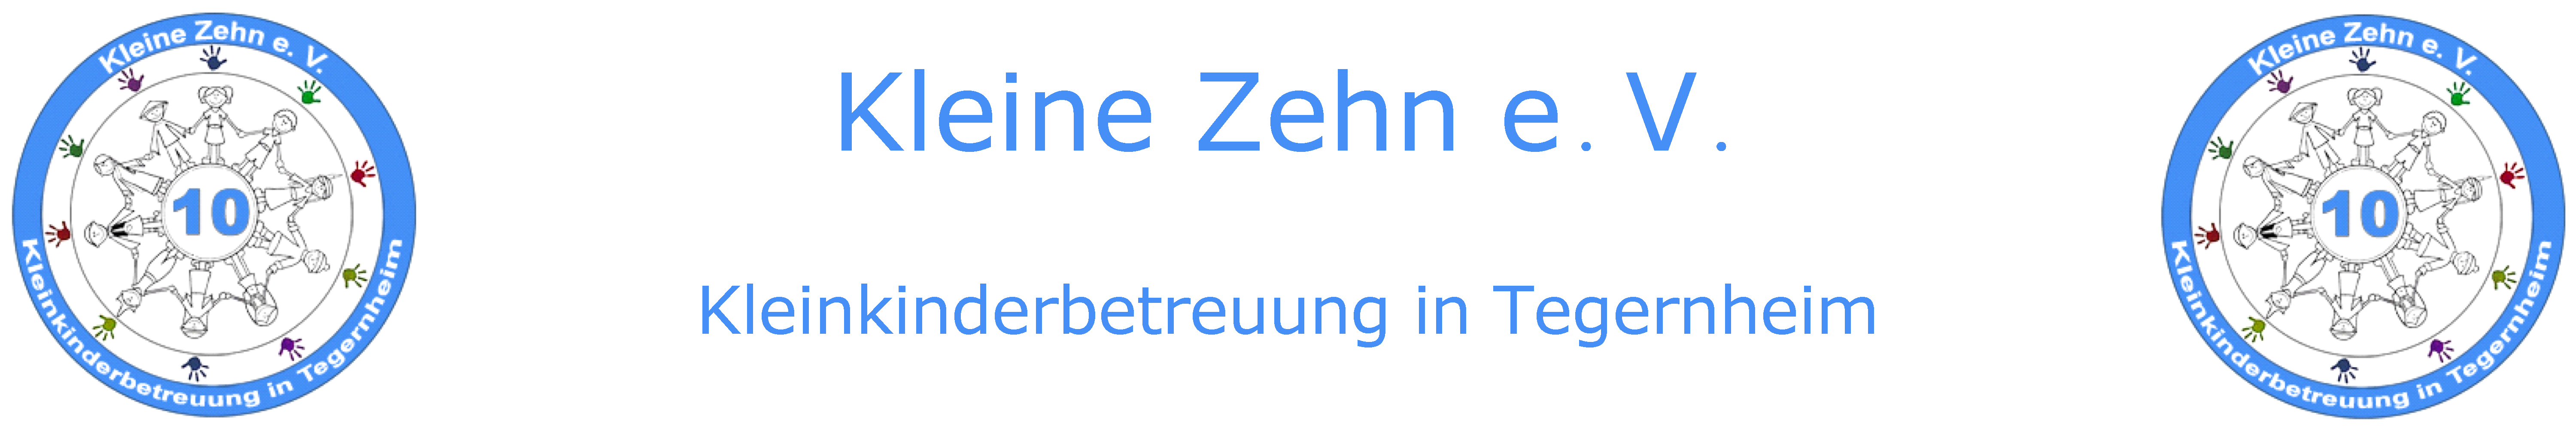 Kleine Zehn e.V. | Kleinkinderbetreuung in Tegernheim